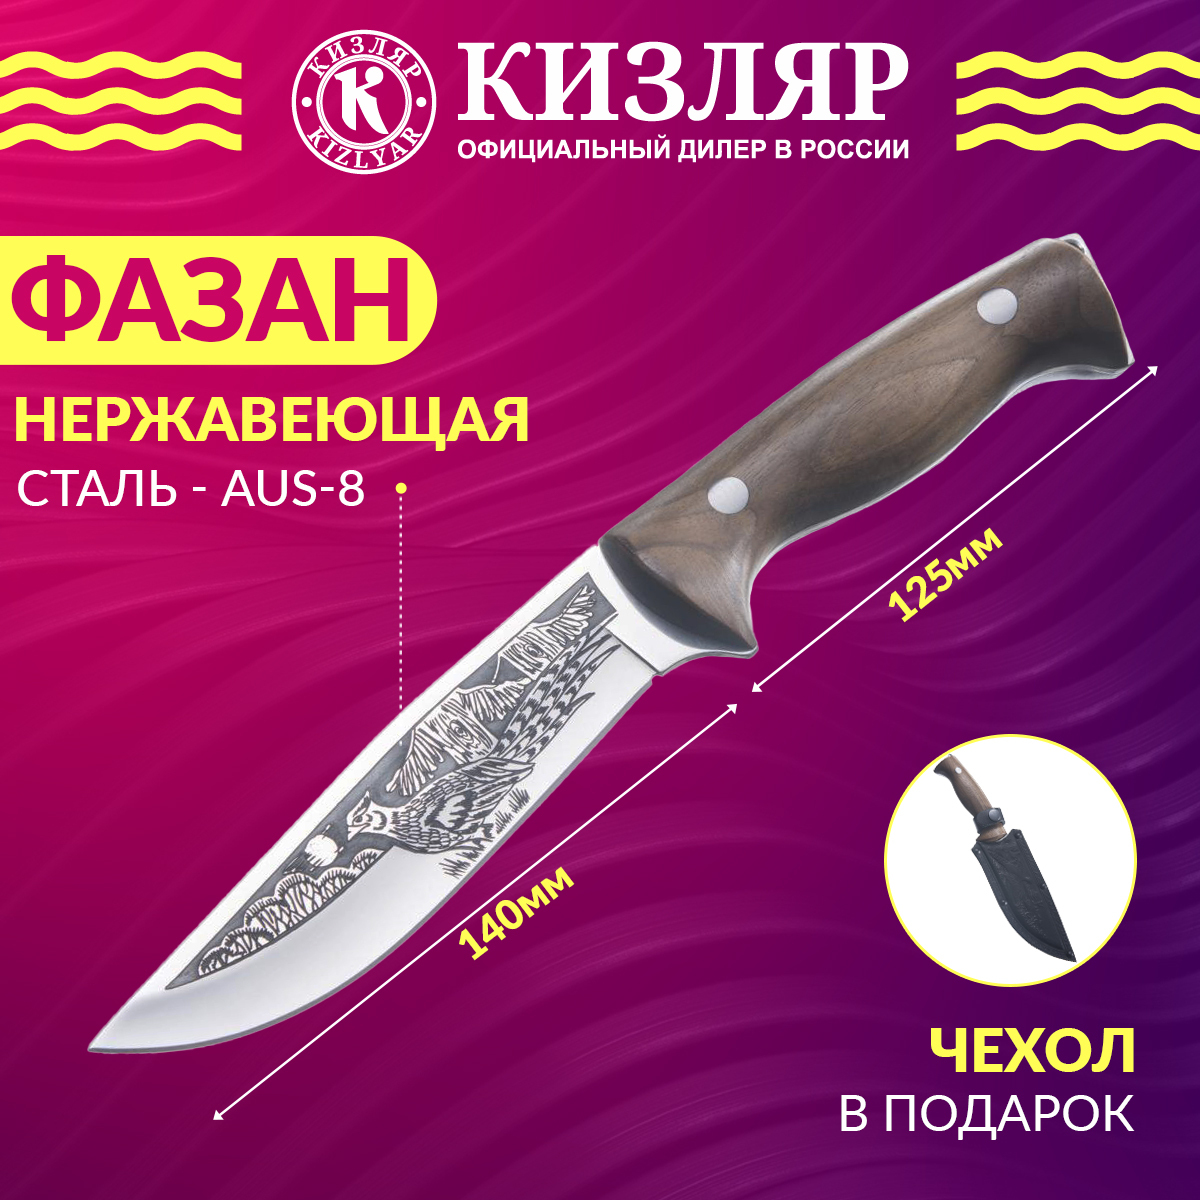 Кизляр кухонные. Нож фазан Кизляр. Нож фазан Кизляр характеристики.